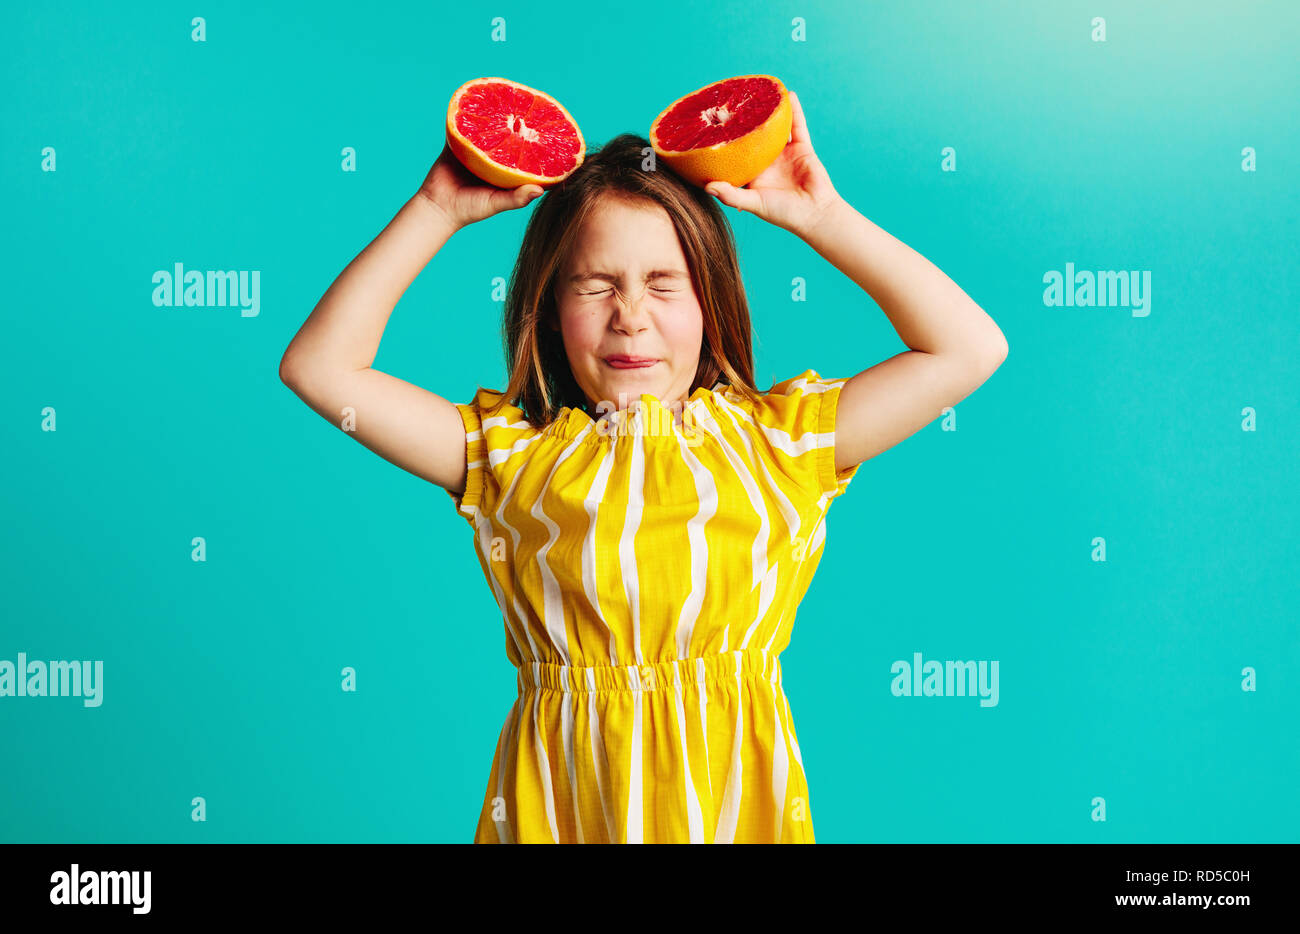 Girl holding grapefruit overhead on blue background. Cute girl does not like the taste of grapefruit. Stock Photo